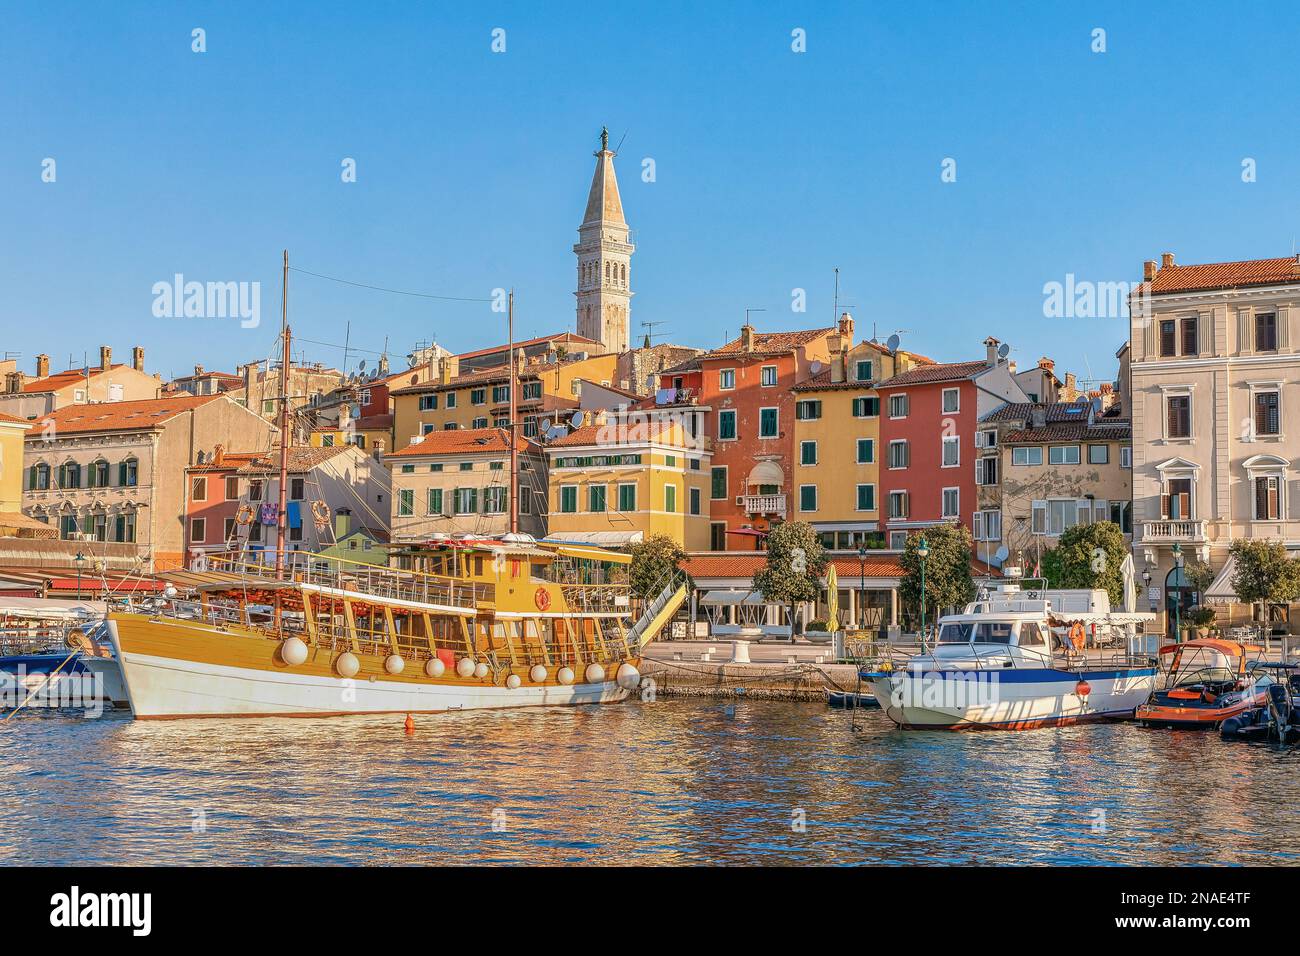 Vue du matin sur la marina de Rovinj et la vieille ville de Rovinj, destination de voyage populaire dans le comté d'Istrie en Croatie Banque D'Images